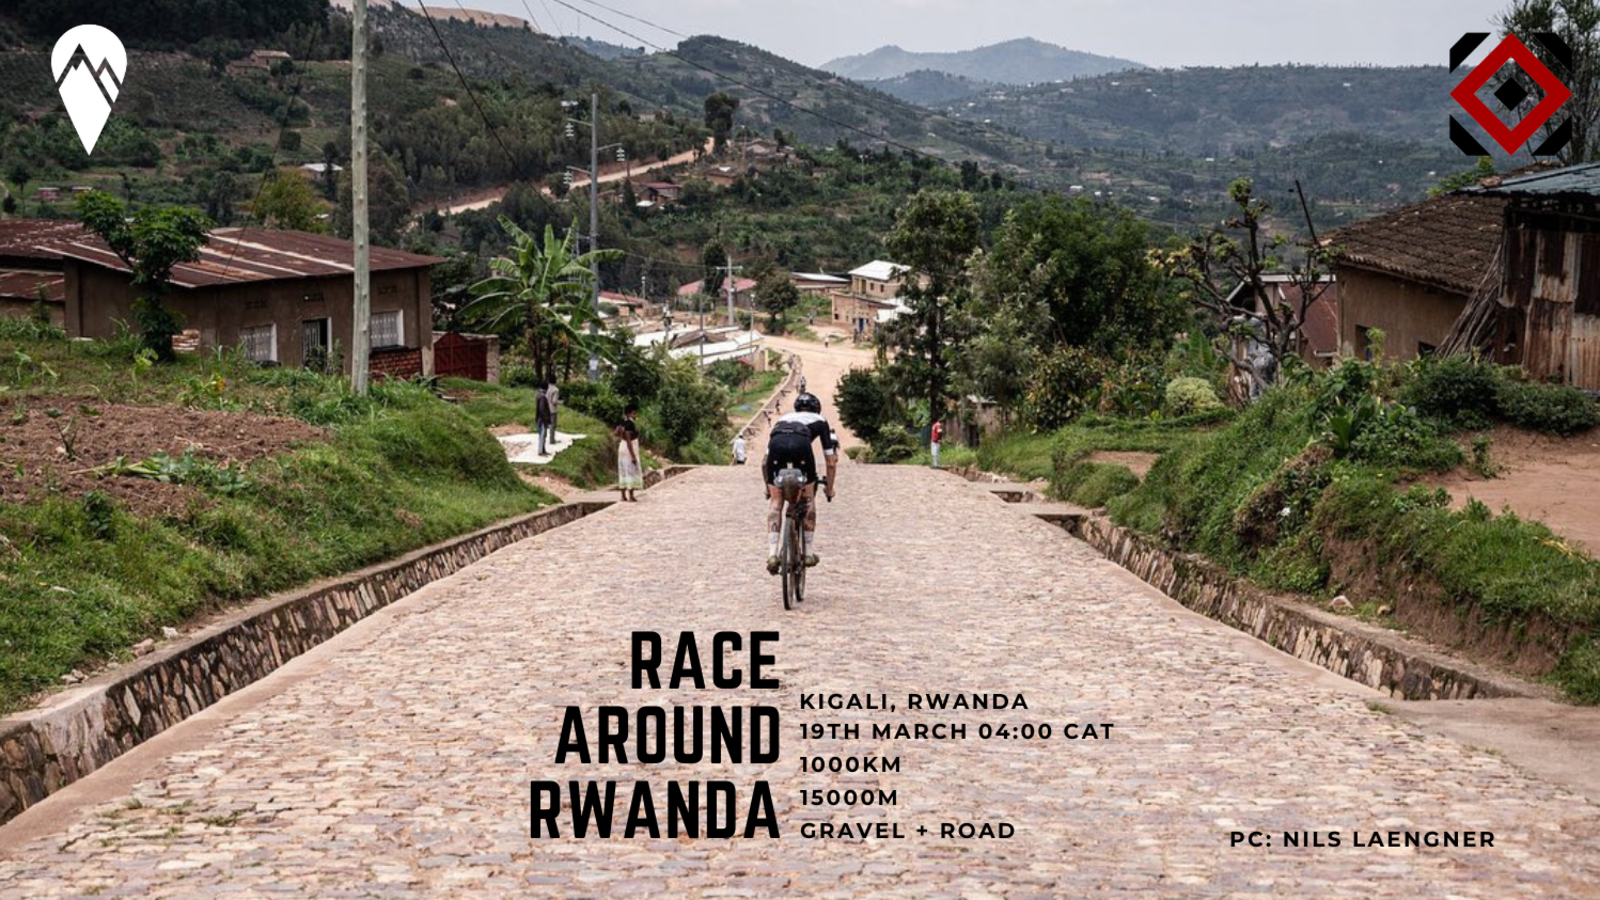 Bikes of Race Around Rwanda